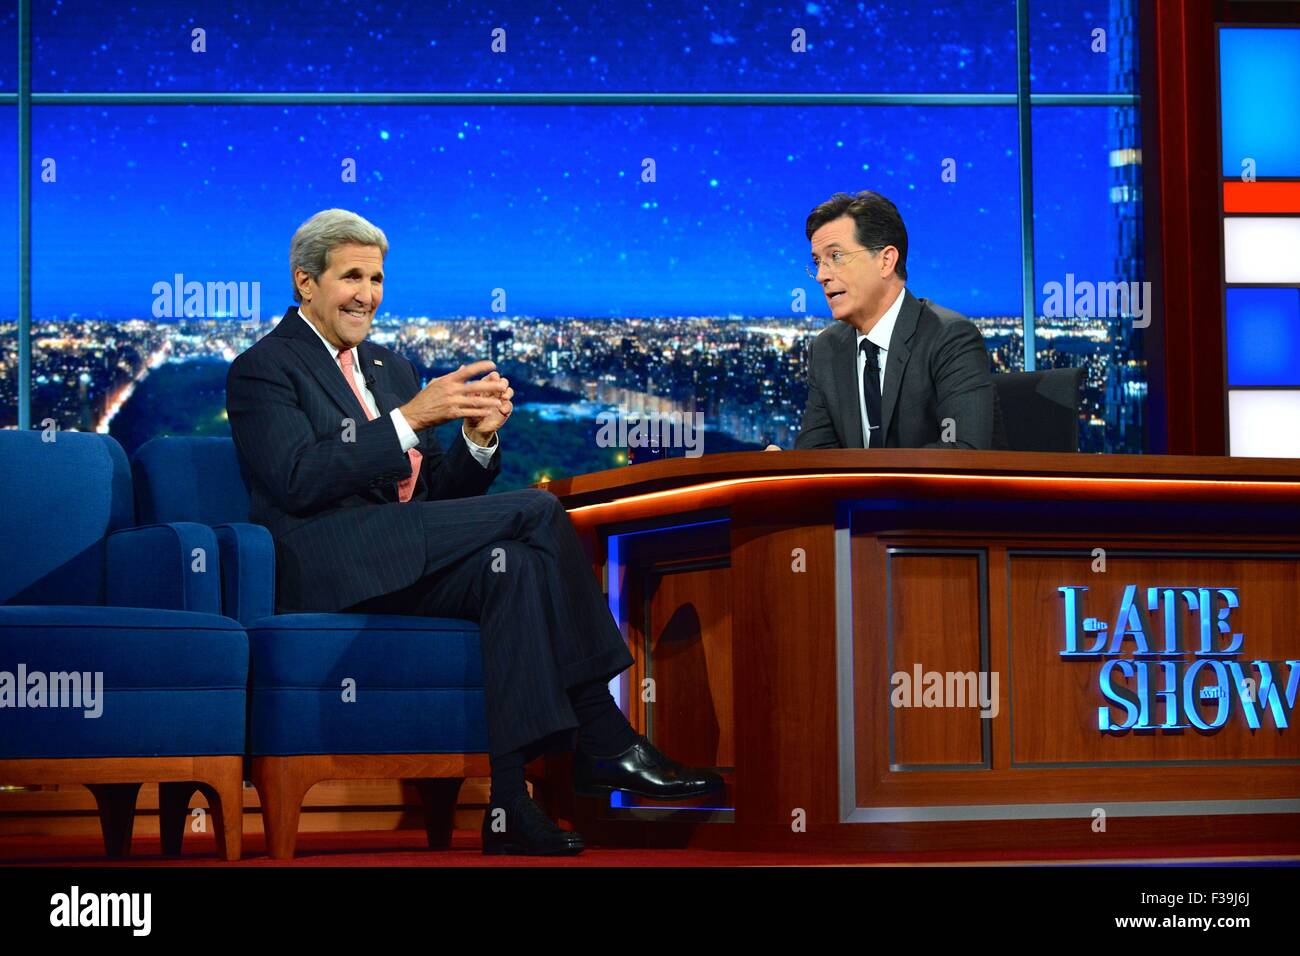 US-Außenminister John Kerry macht einen Gastauftritt in The Late Show mit Stephen Colbert 1. Oktober 2015 in New York City. Stockfoto